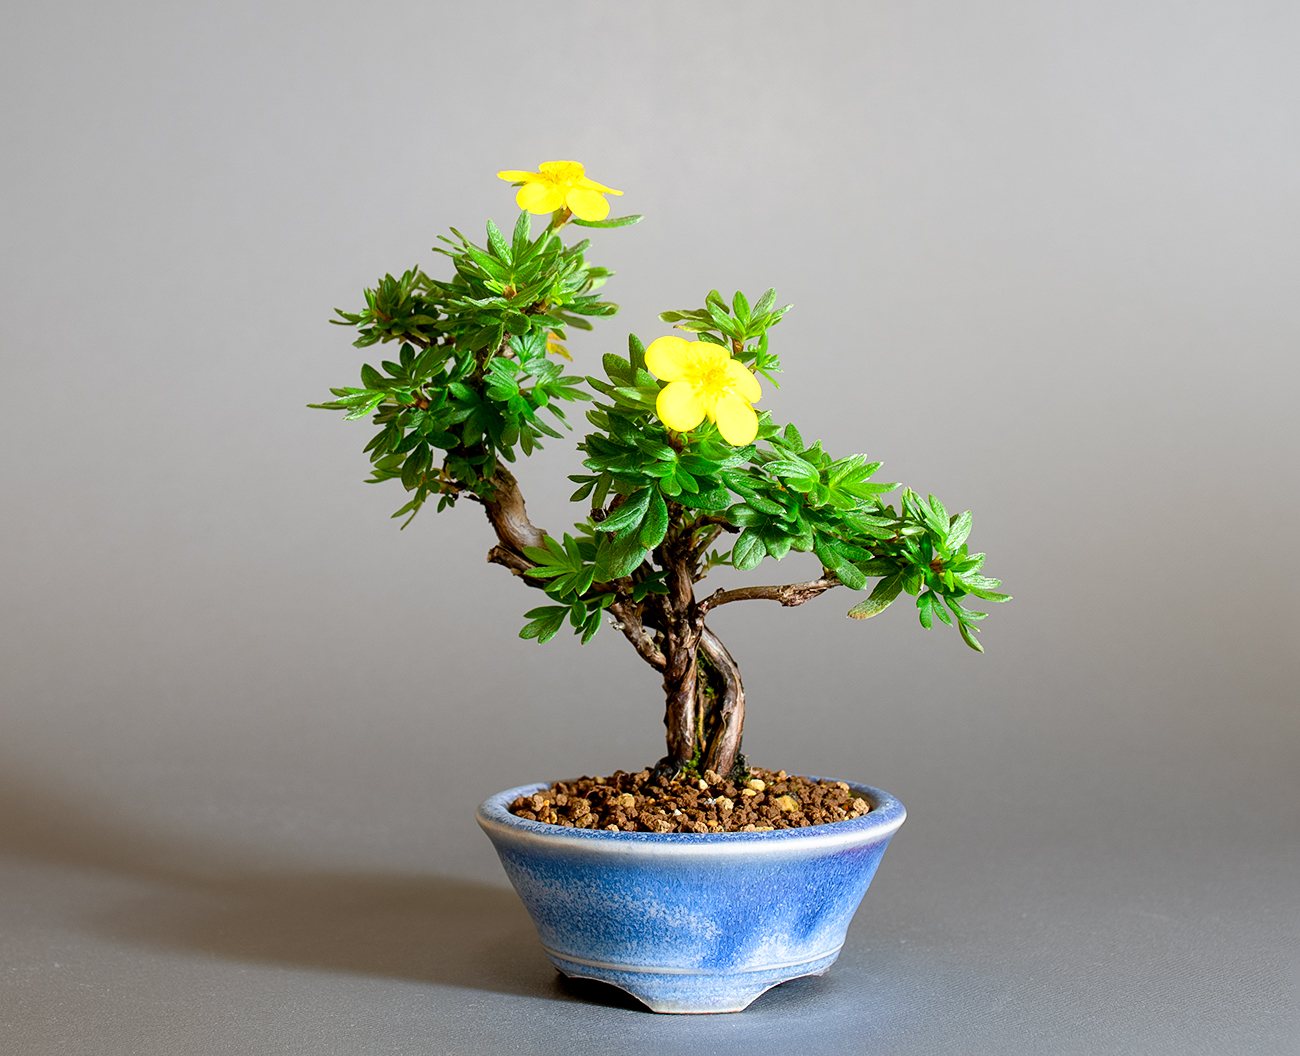 キンロバイ-N（きんろばい・金露梅）花もの盆栽の販売と育て方・作り方・Potentilla fruticosa bonsai